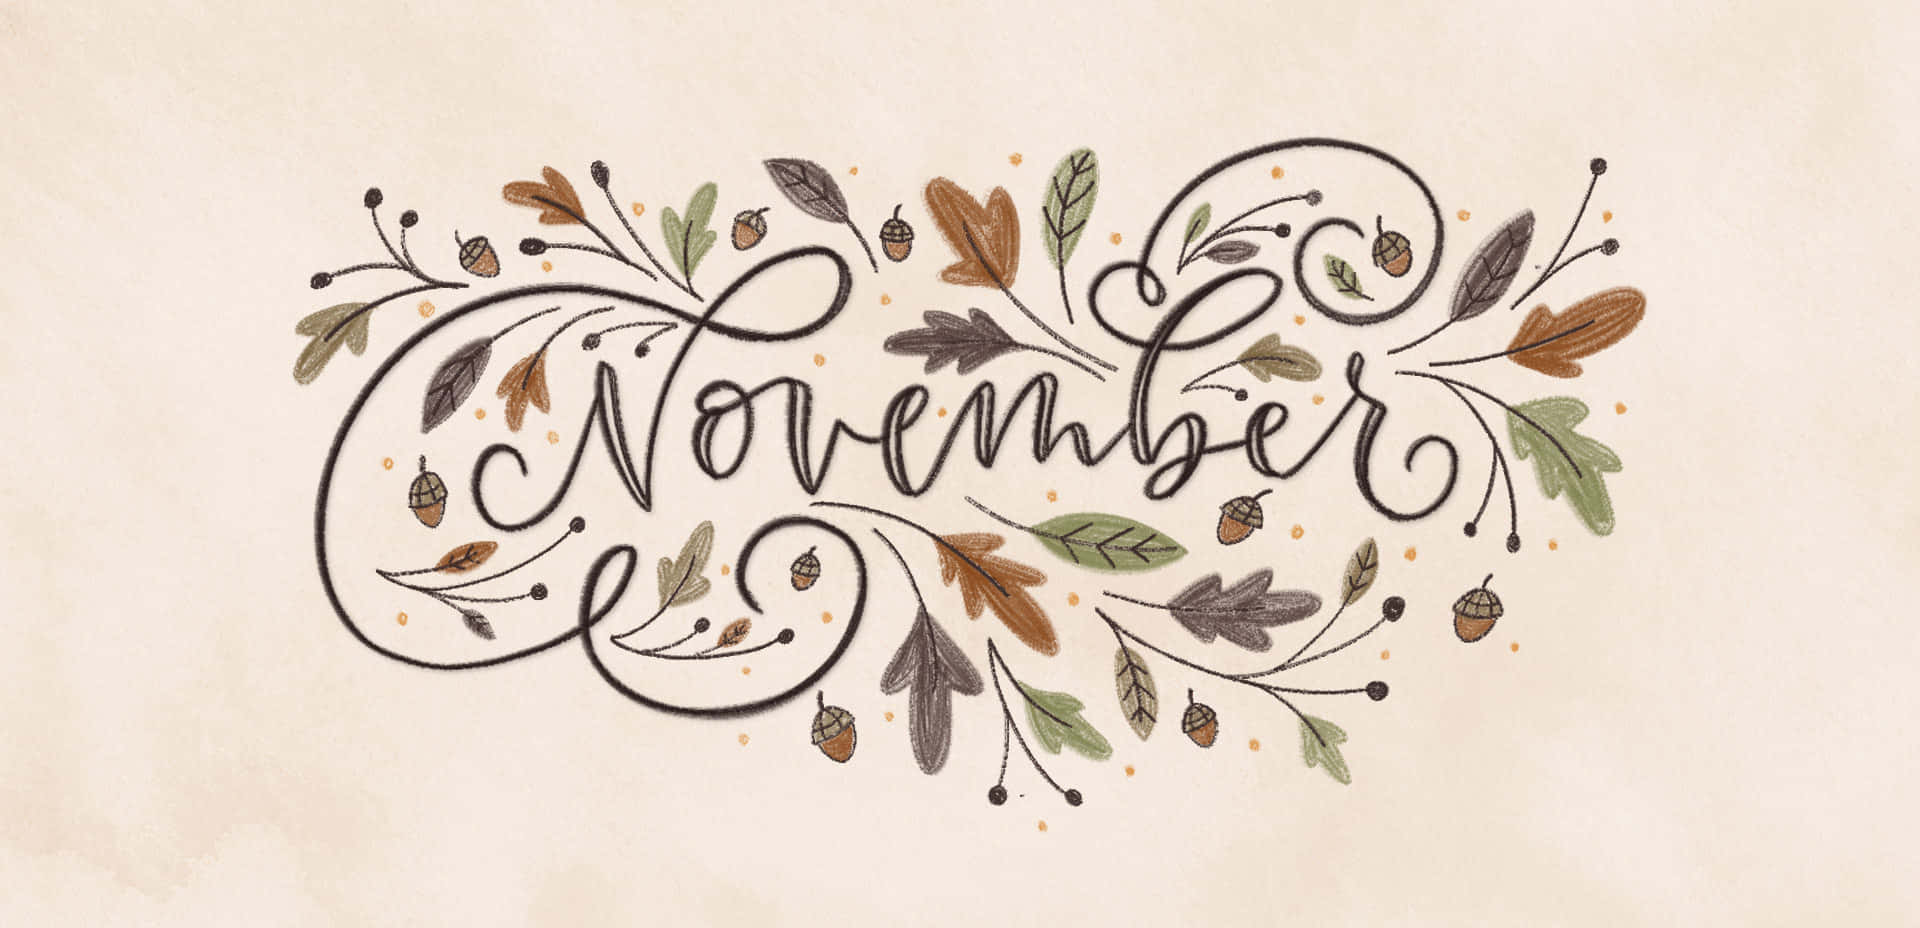 Enjoy The Start Of November!